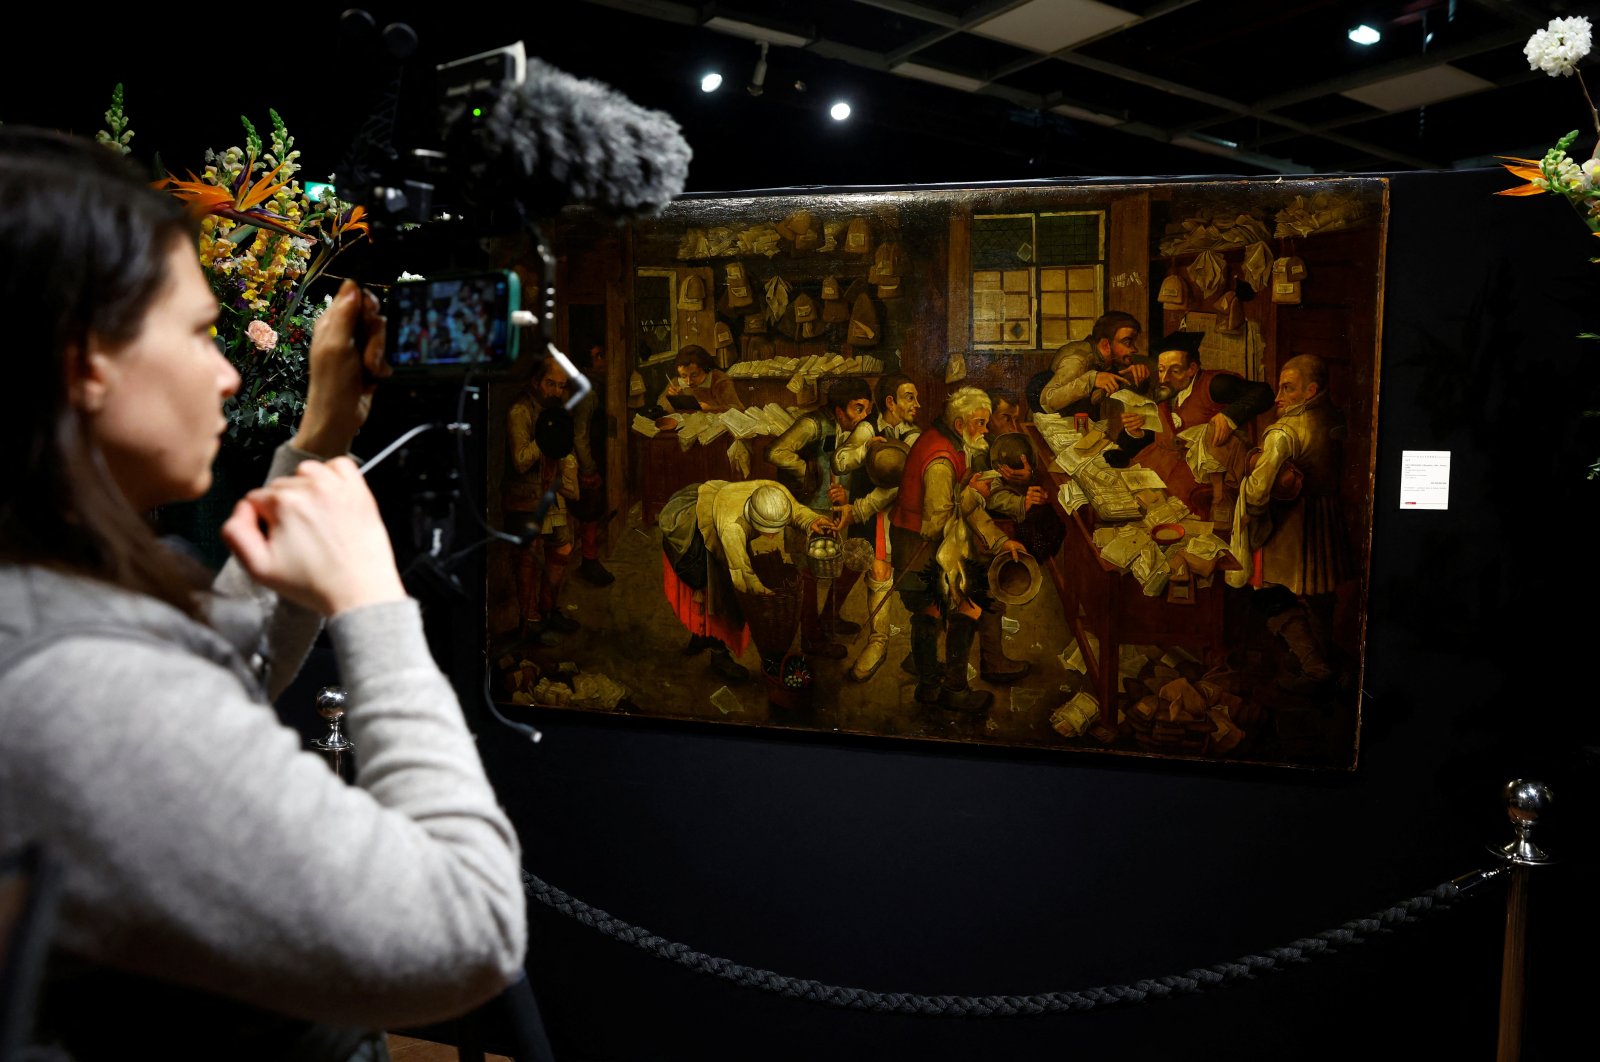 Lukisan yang ditemukan di ruang TV menemukan mahakarya Brueghel